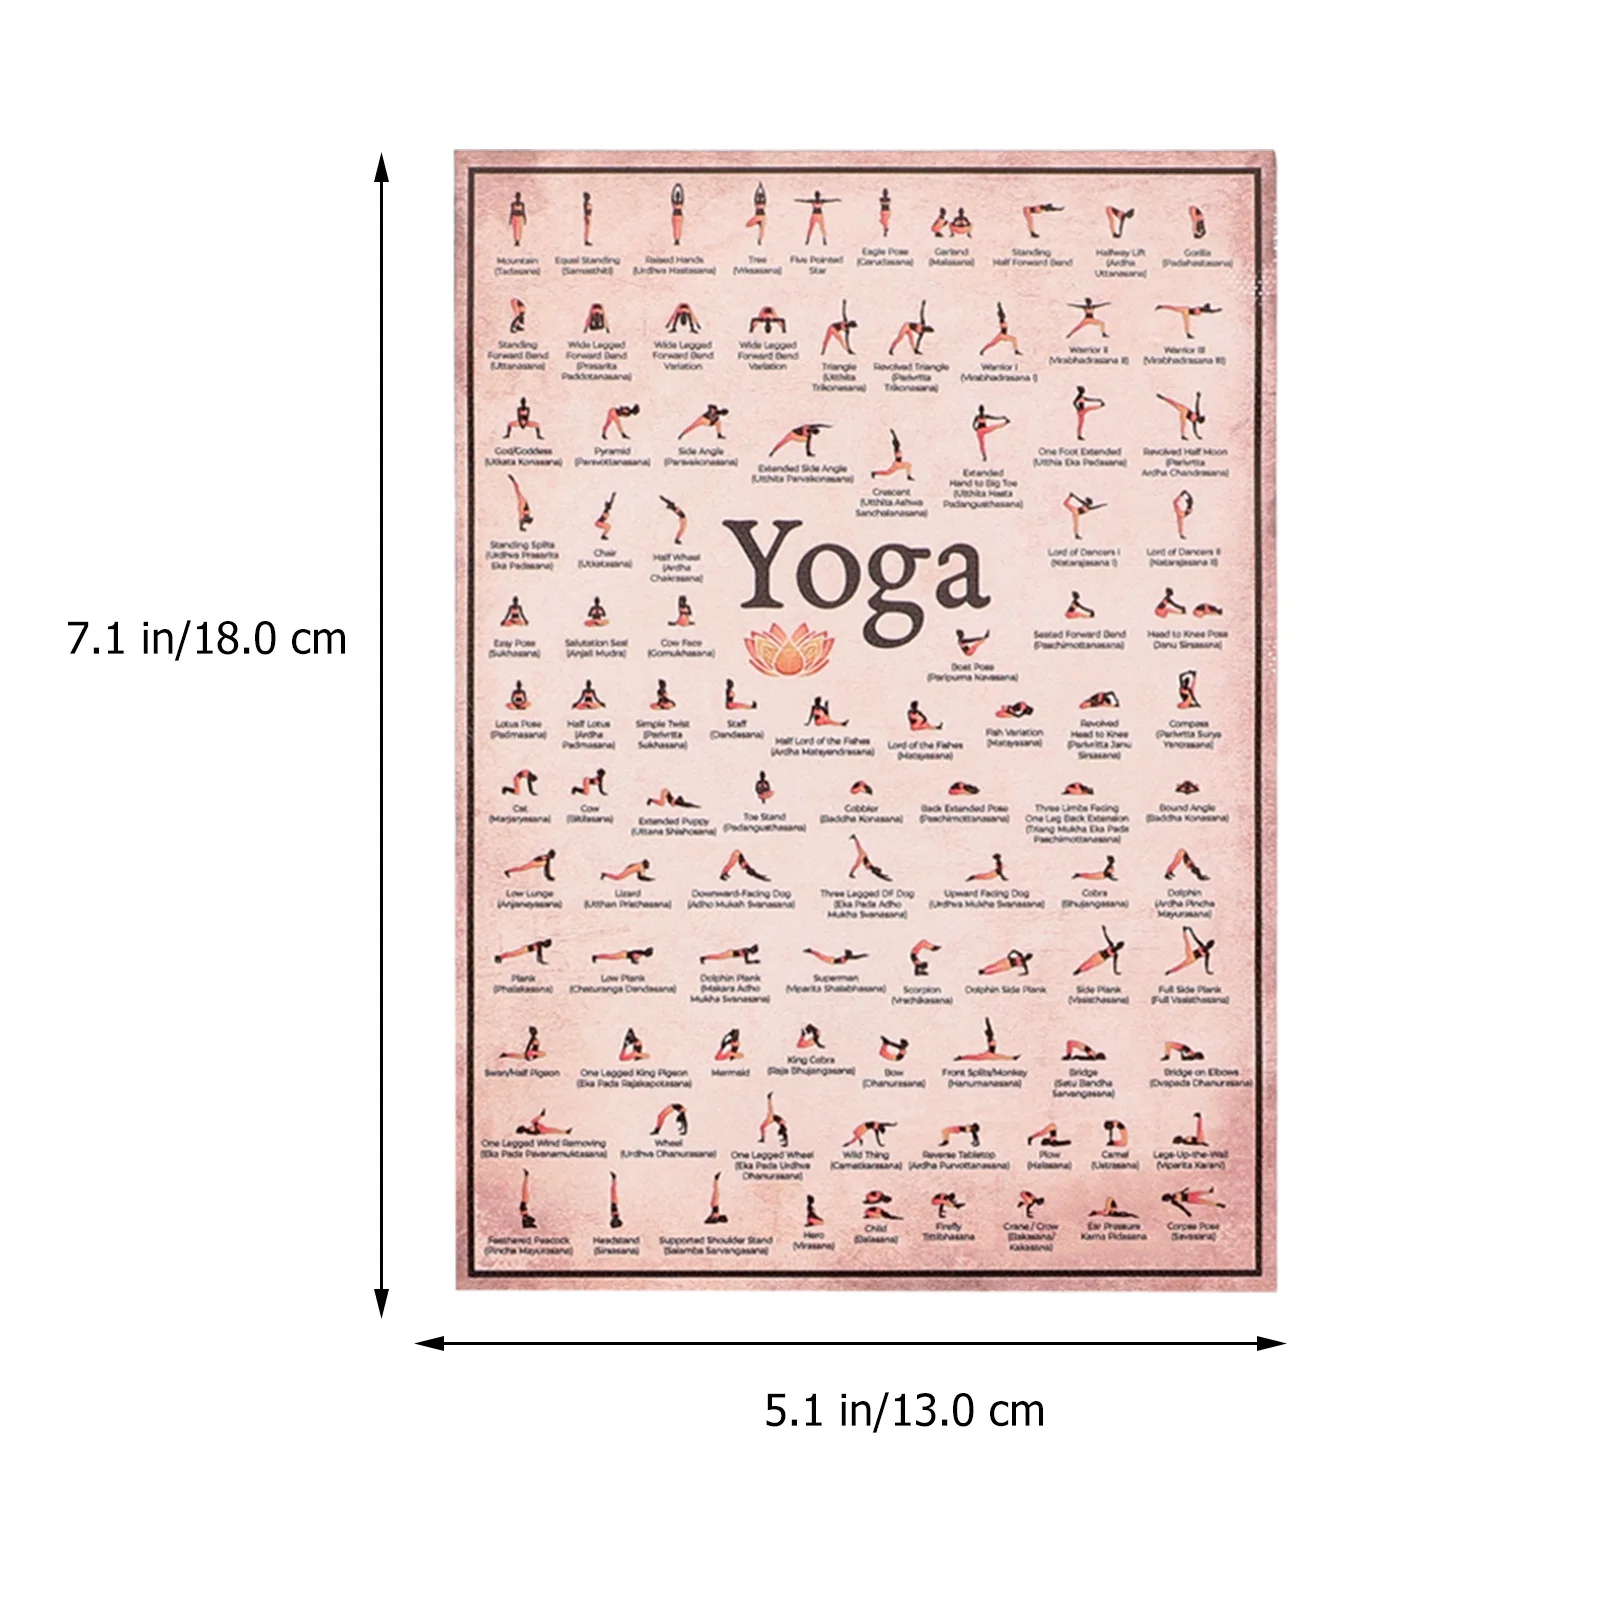 6 szt. Sprzęt do jogi ścienny sprzęt do jogi projekt na płótnie plakat do jogi obraz gospodarstwa domowego trening domowy sprzęt do jogi